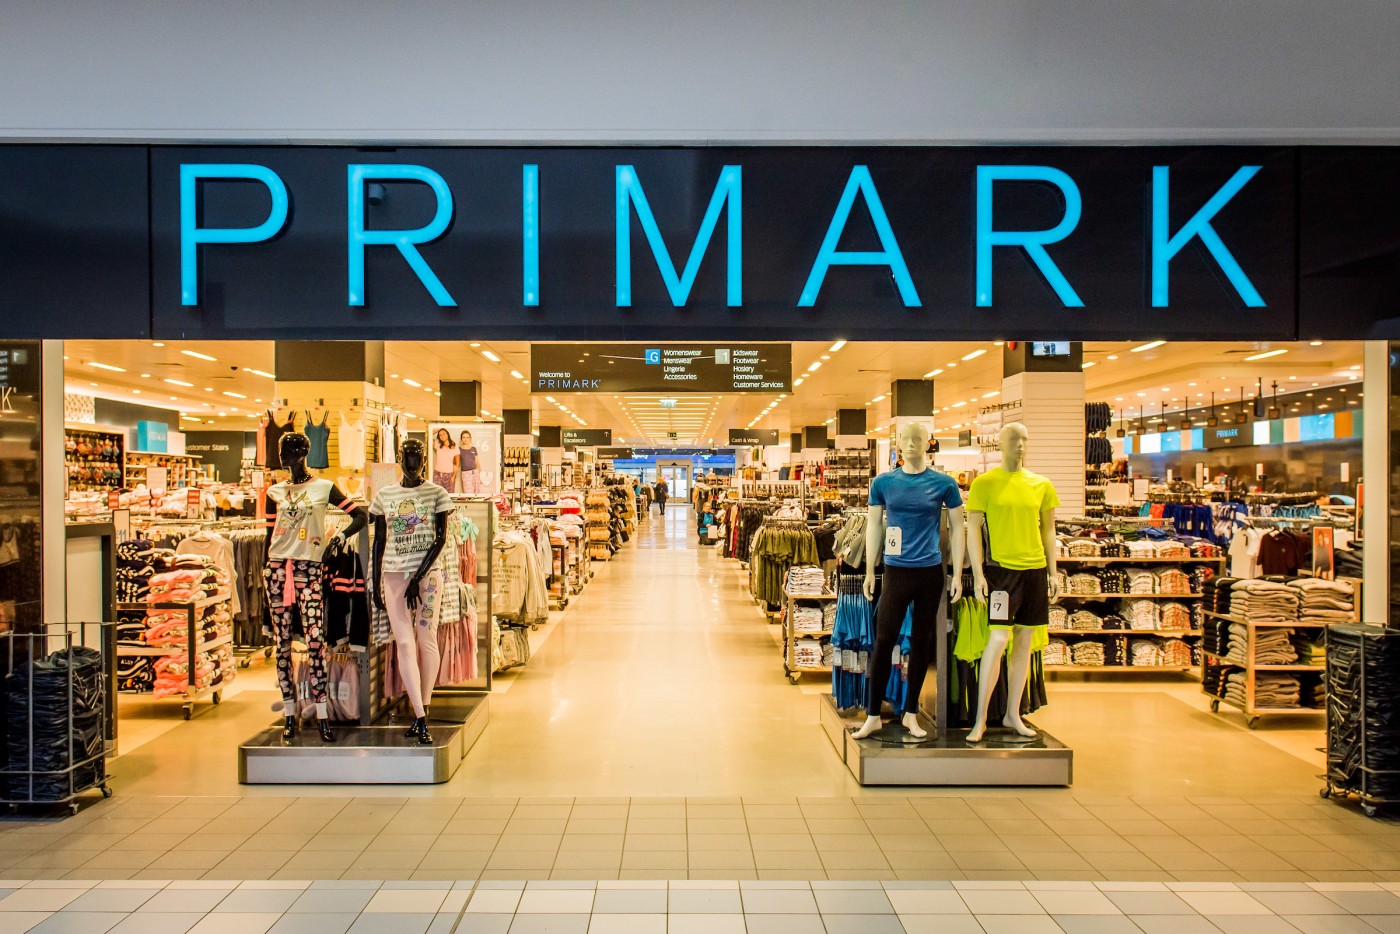 Primark at St John's Shopping Centre